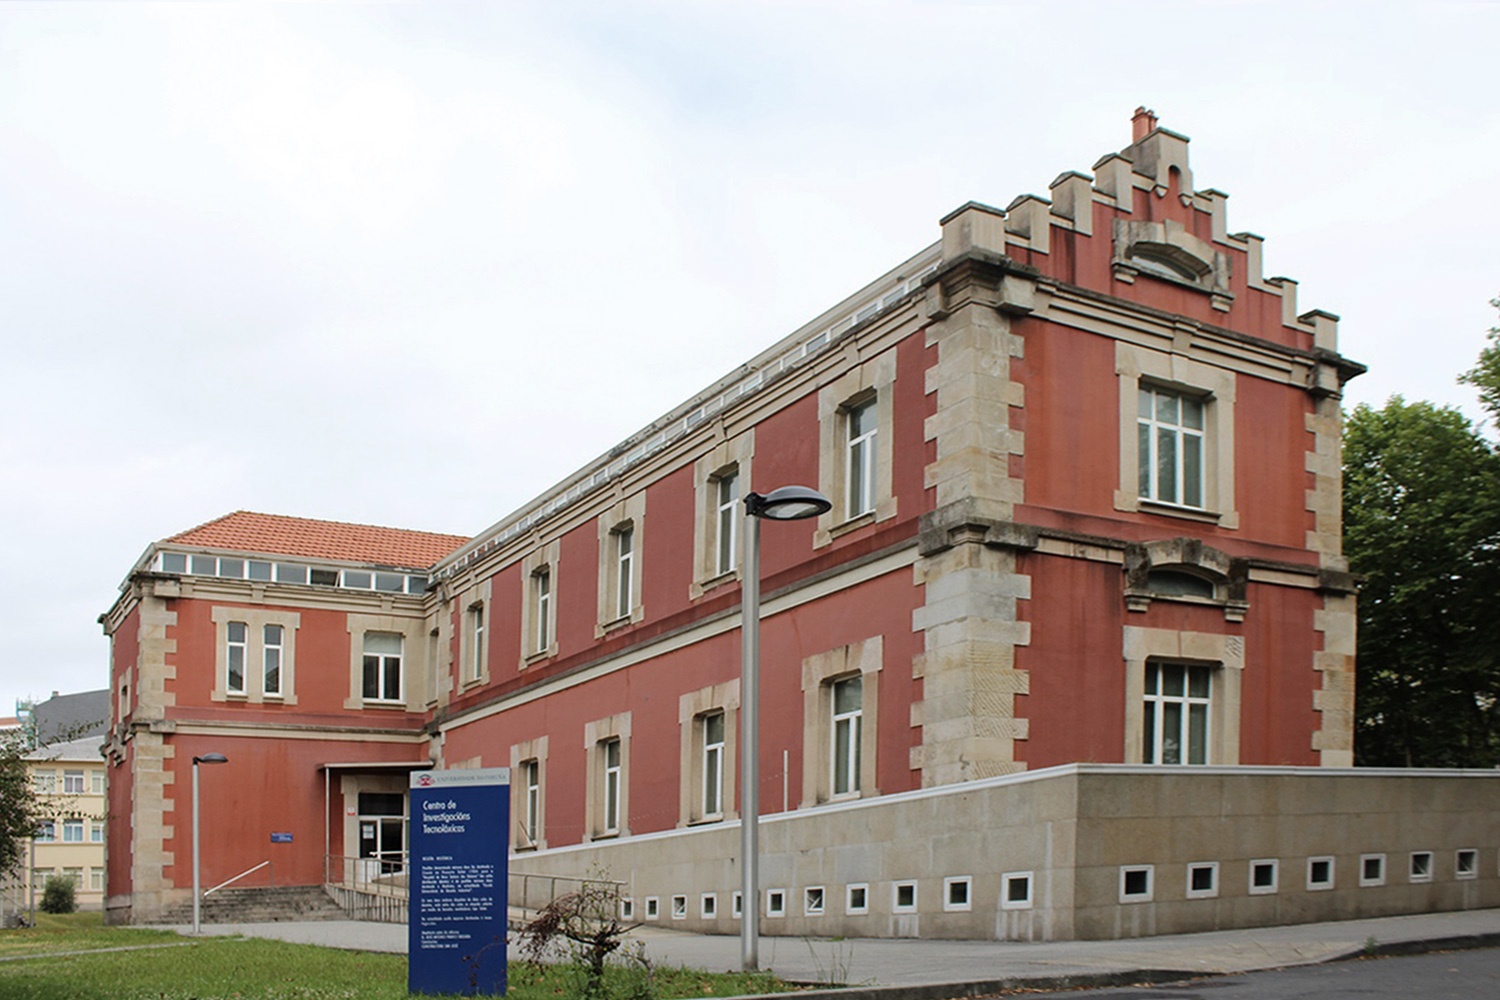 O Centro de Investigación en Tecnoloxías Navais e Industriais (CITENI) está situado no Campus Industrial de Ferrol